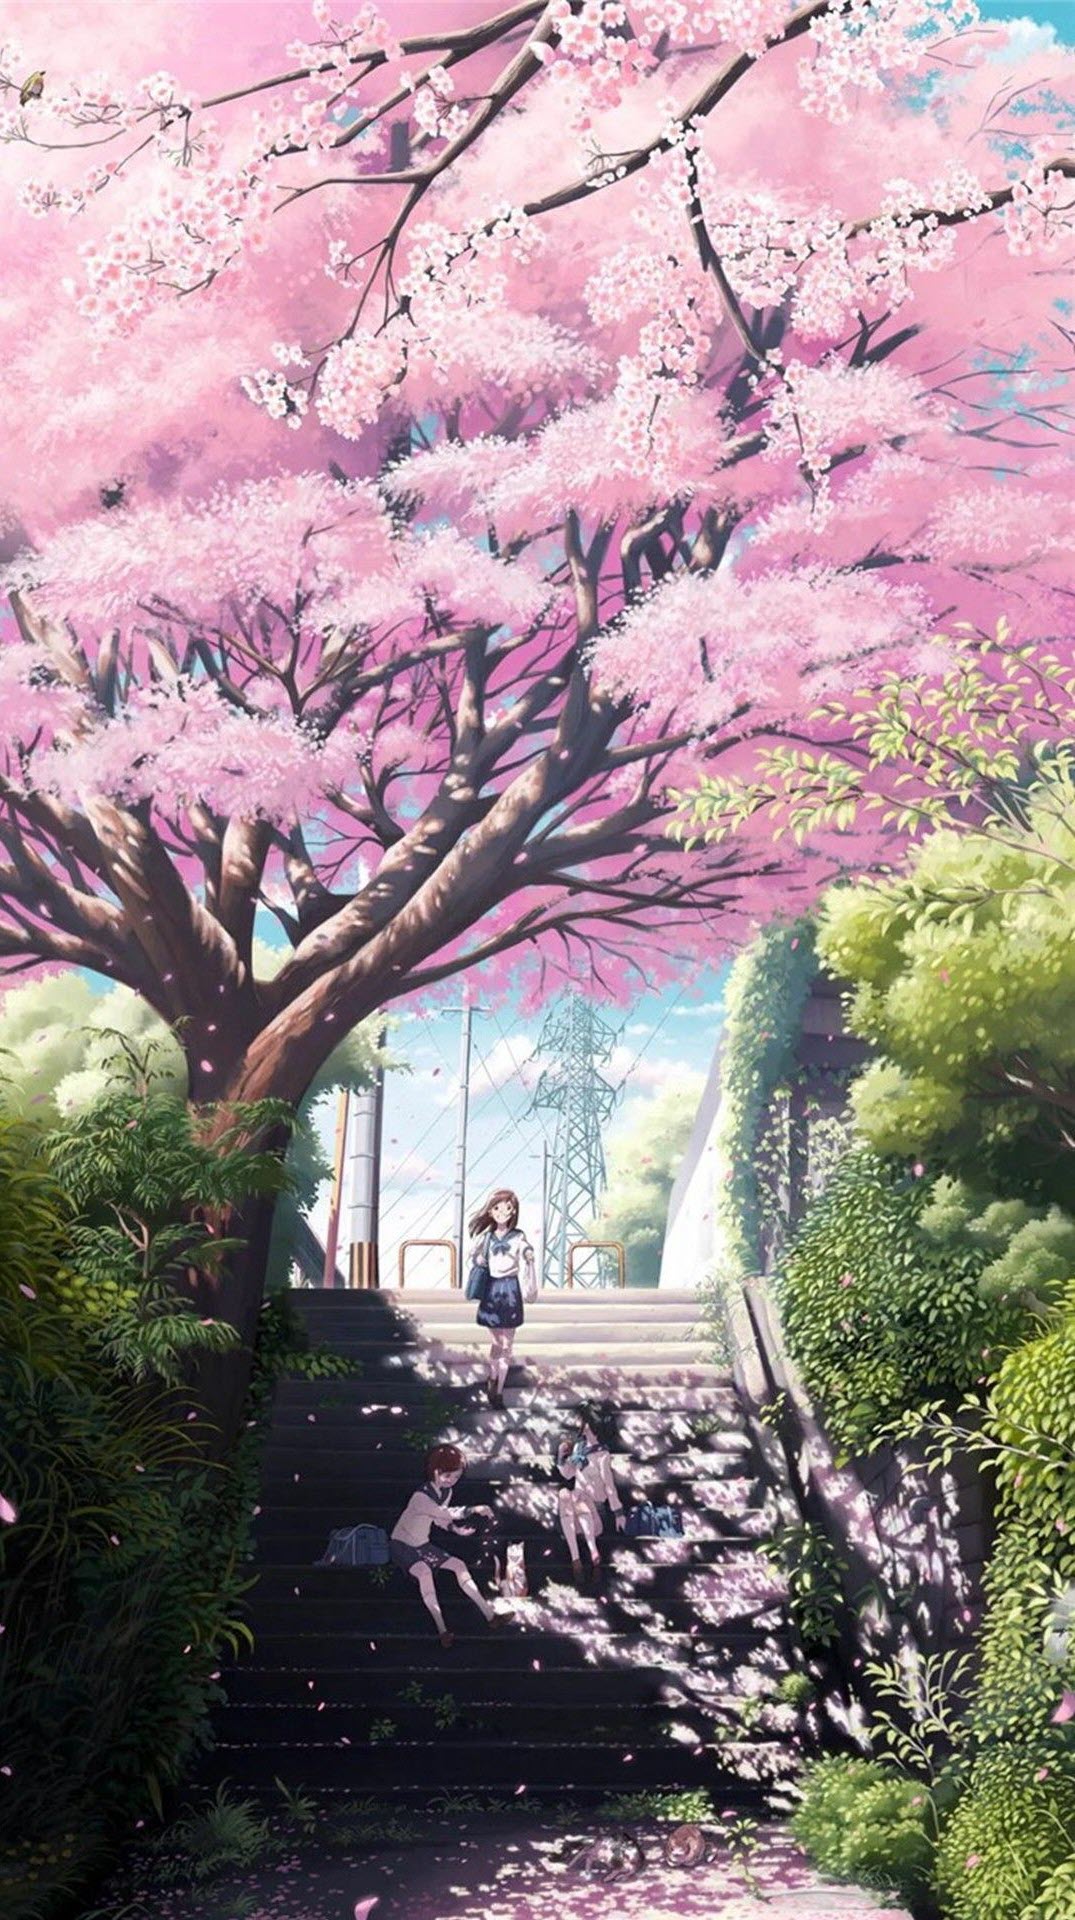 Ảnh nền Anime phong cảnh hoa anh đào tuyệt đẹp Full HD cho điện thoại